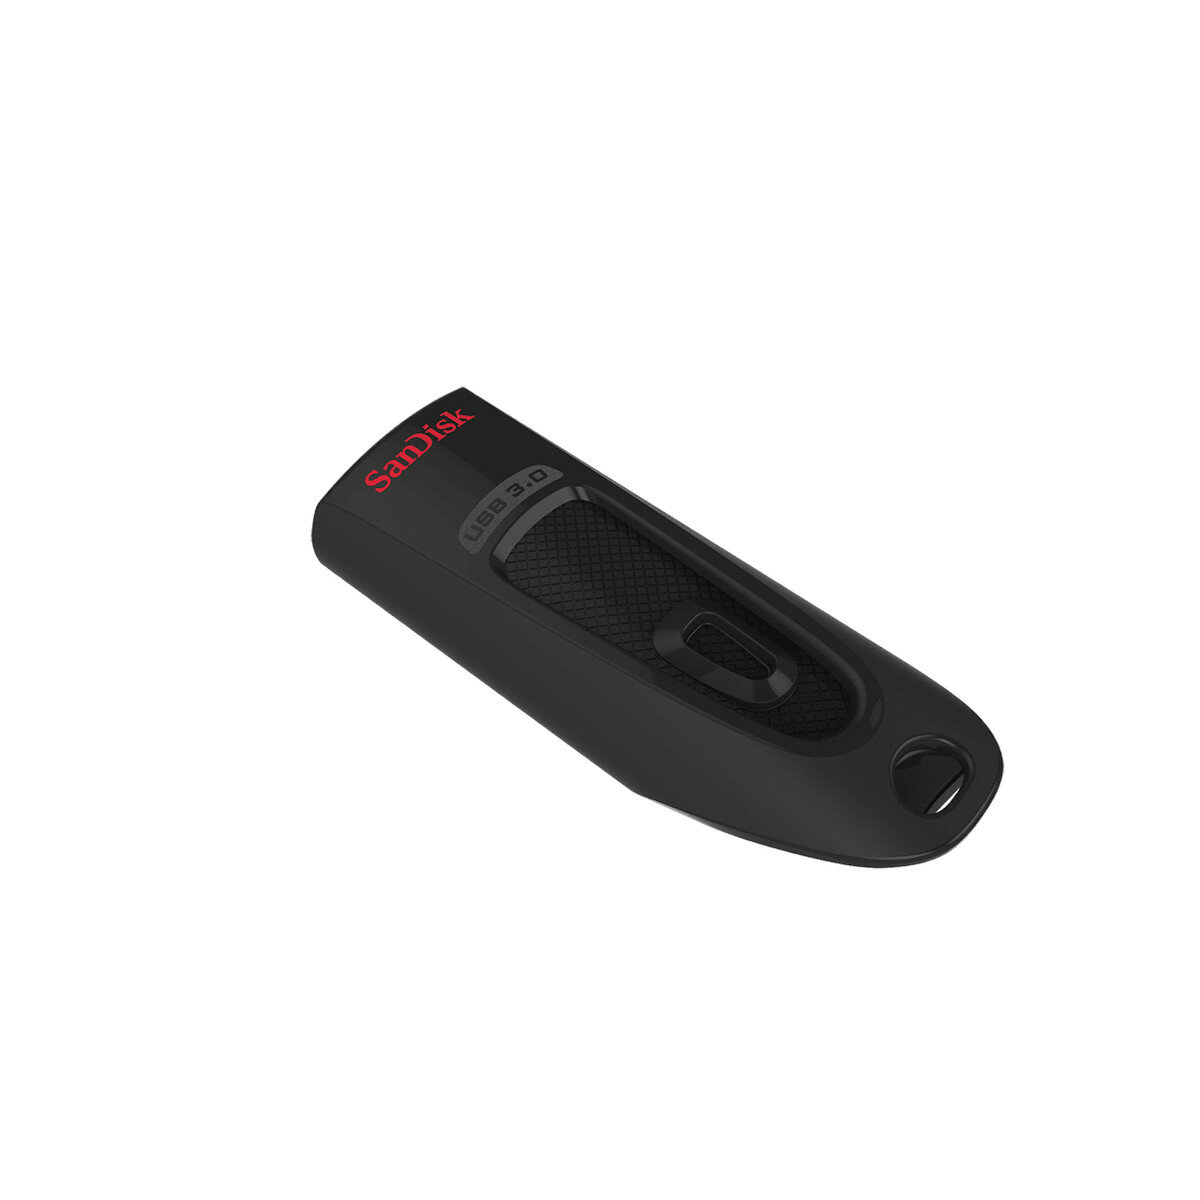 Pendrive SanDisk Ultra USB 3.0 256 GB widoczny tyłem ze schowanym złączem